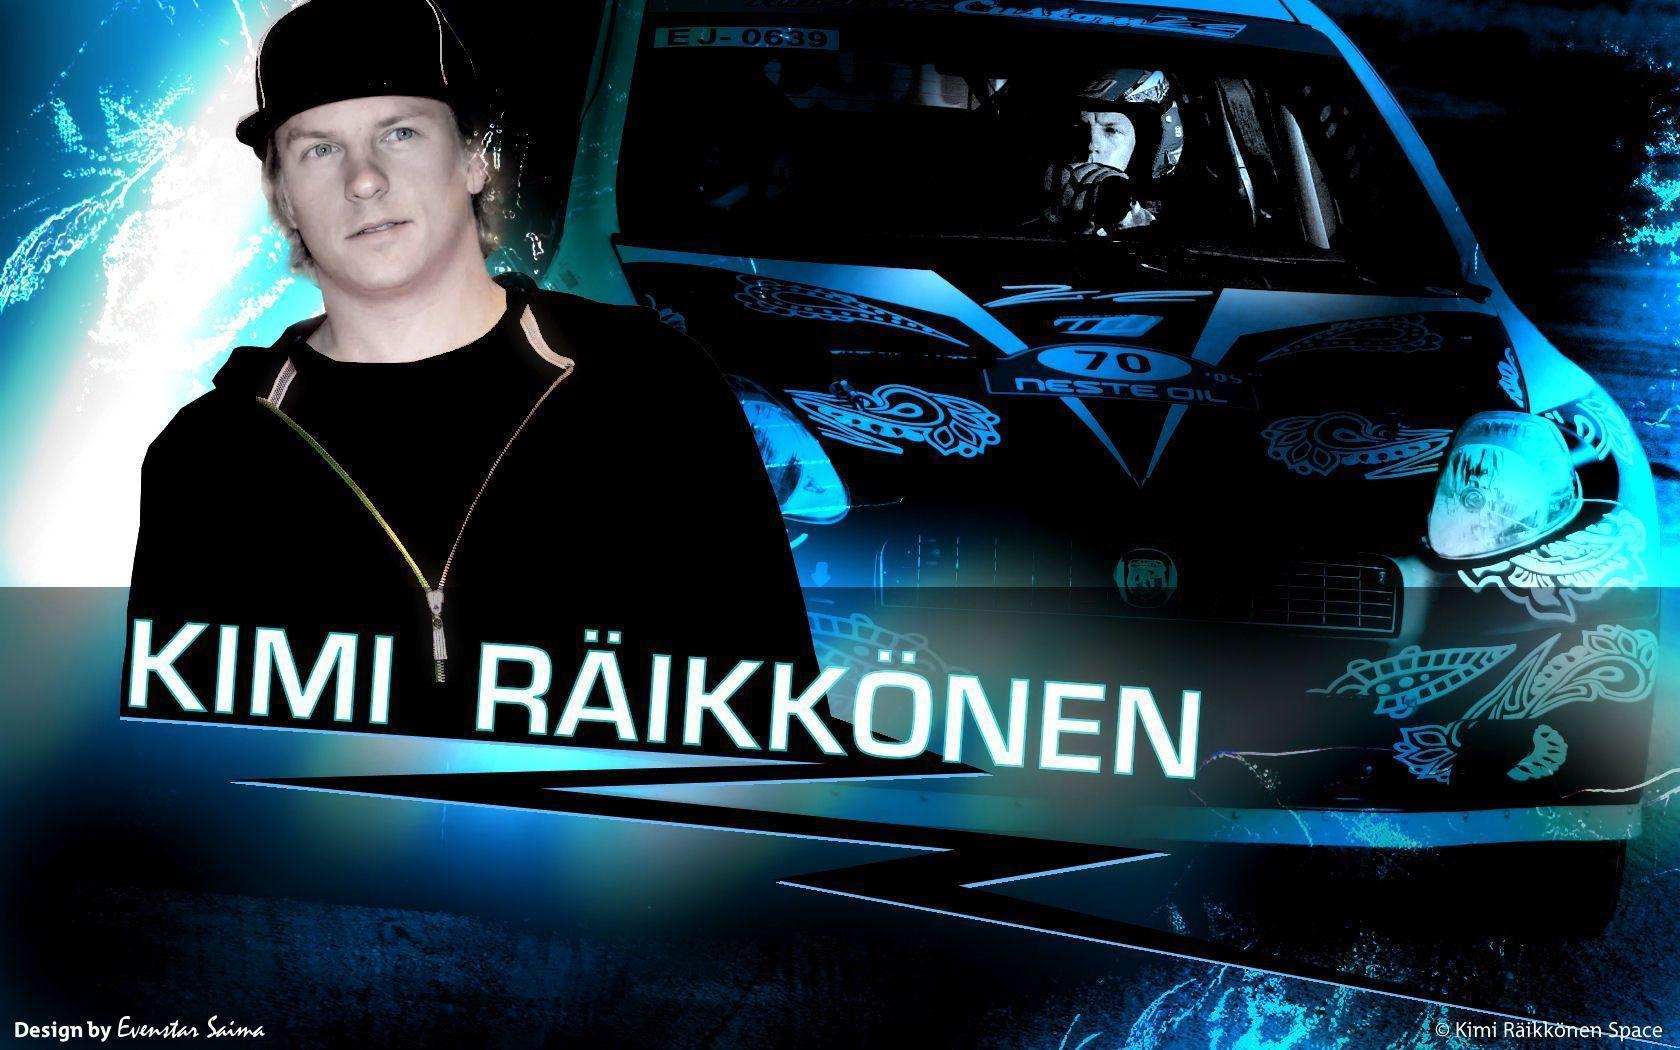 Wallpaper: Rally Raikkonen. Kimi Räikkönen Space